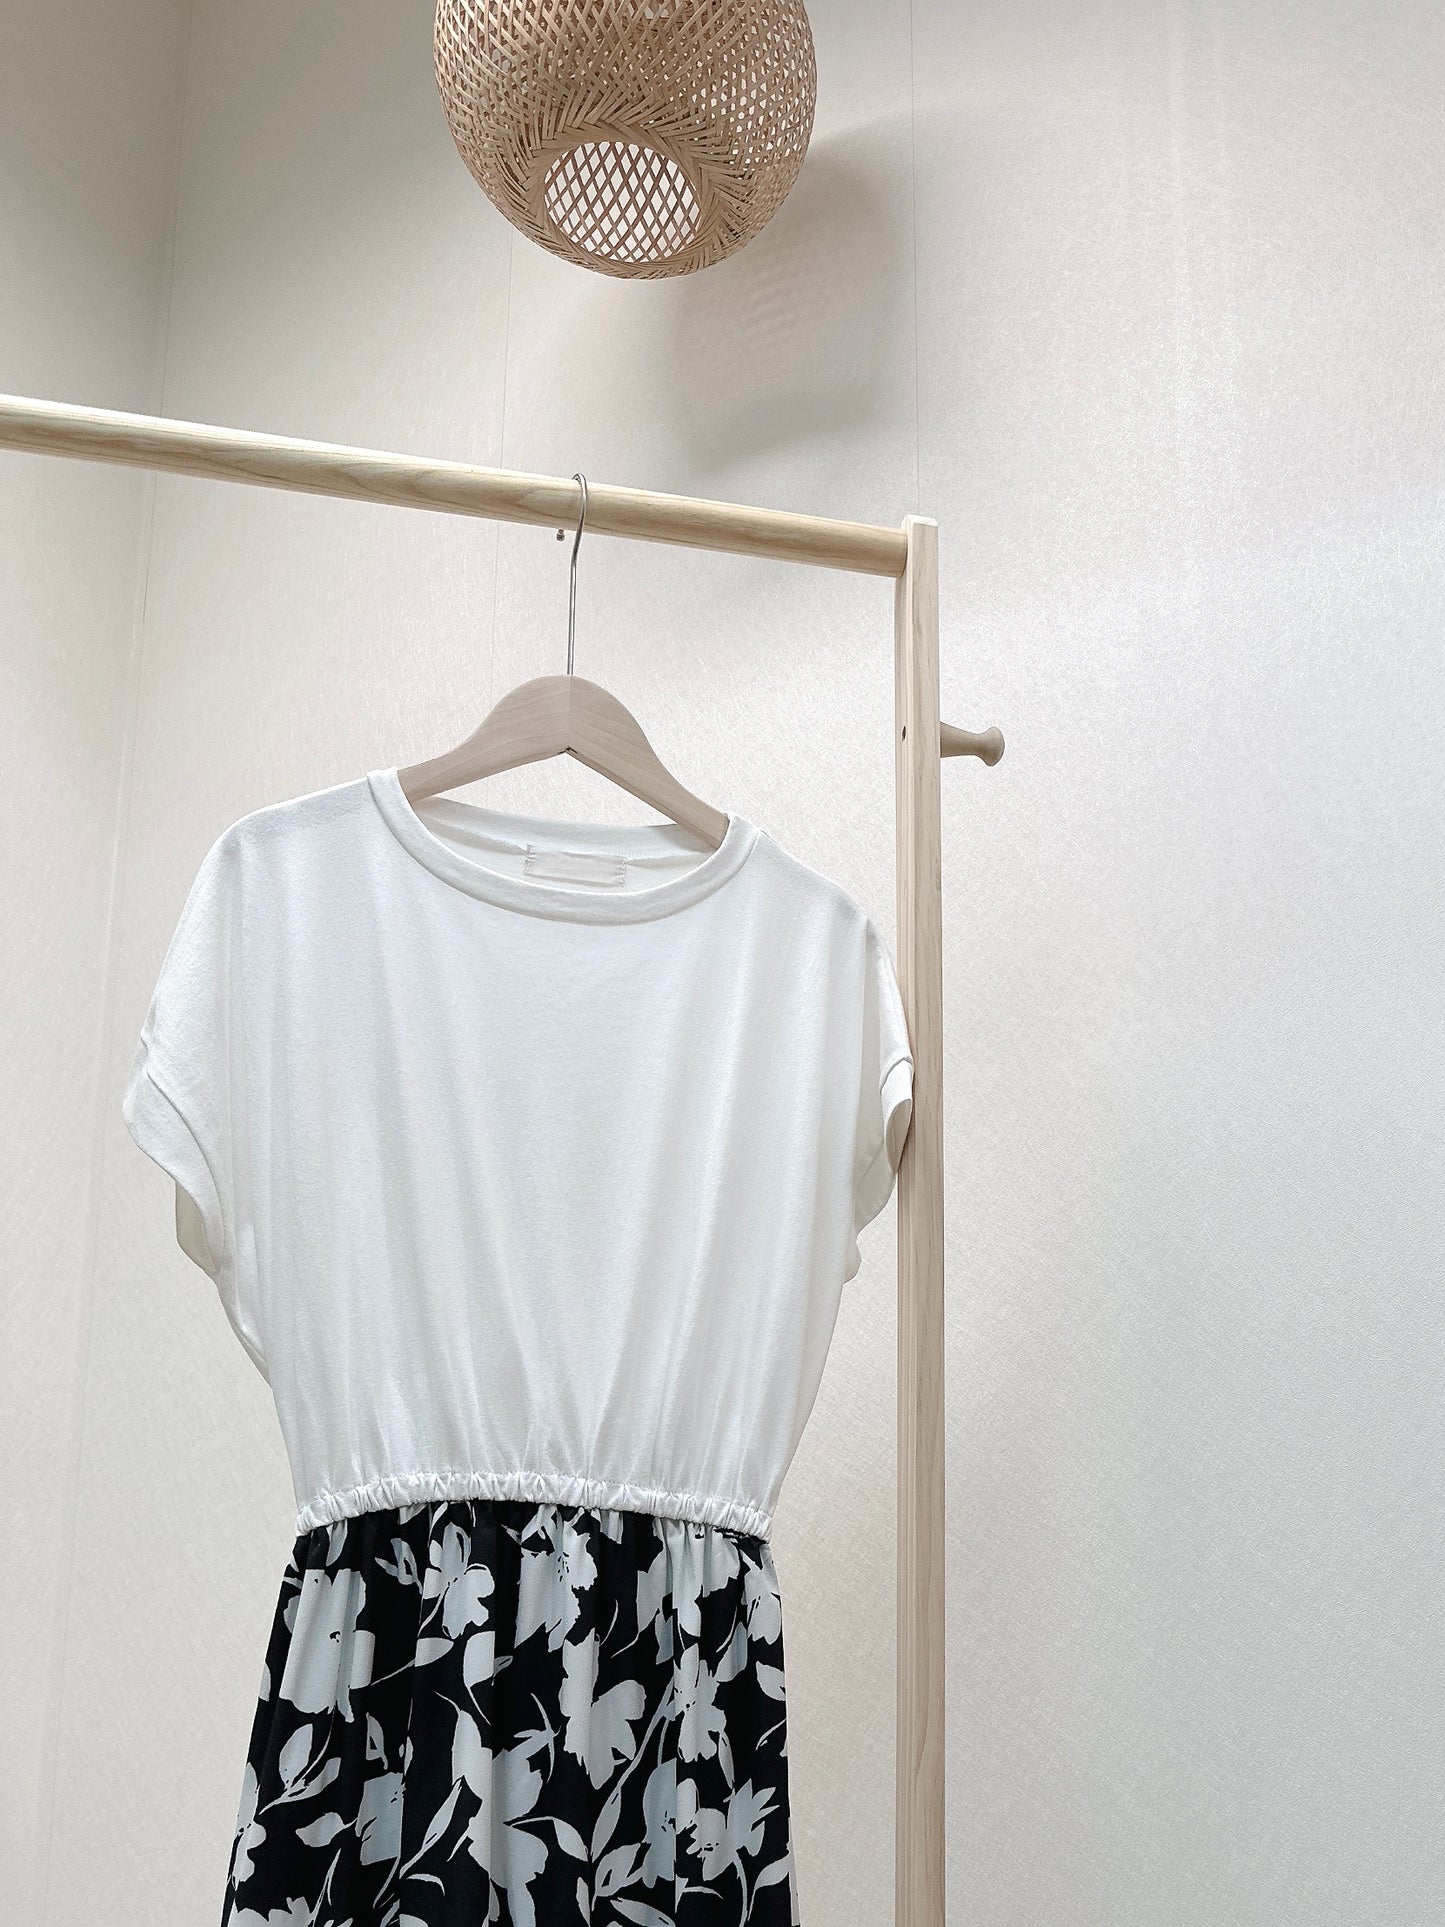 AF9002一件式白花圖騰連身裙